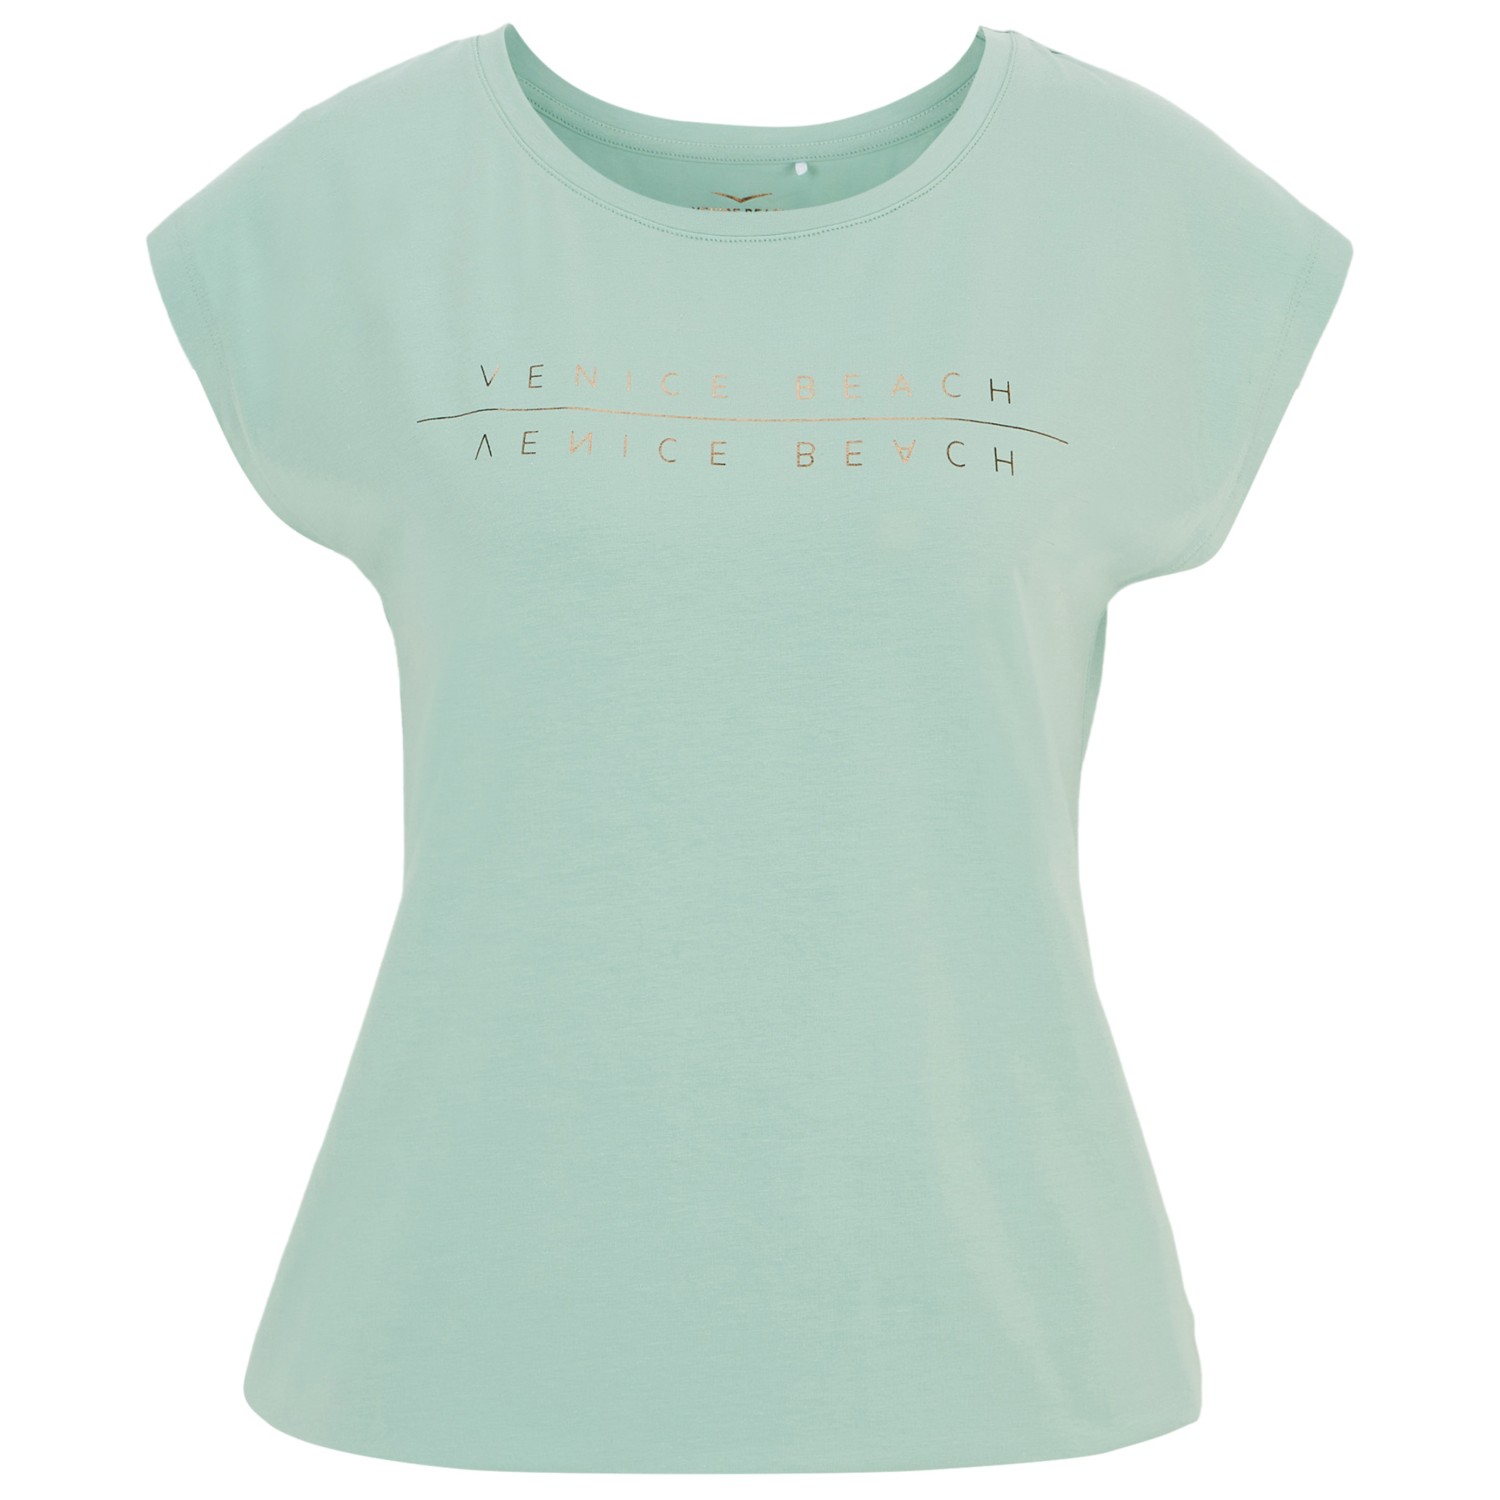 Функциональная рубашка Venice Beach Women's Wonder T Shirt, цвет Blue Chalk